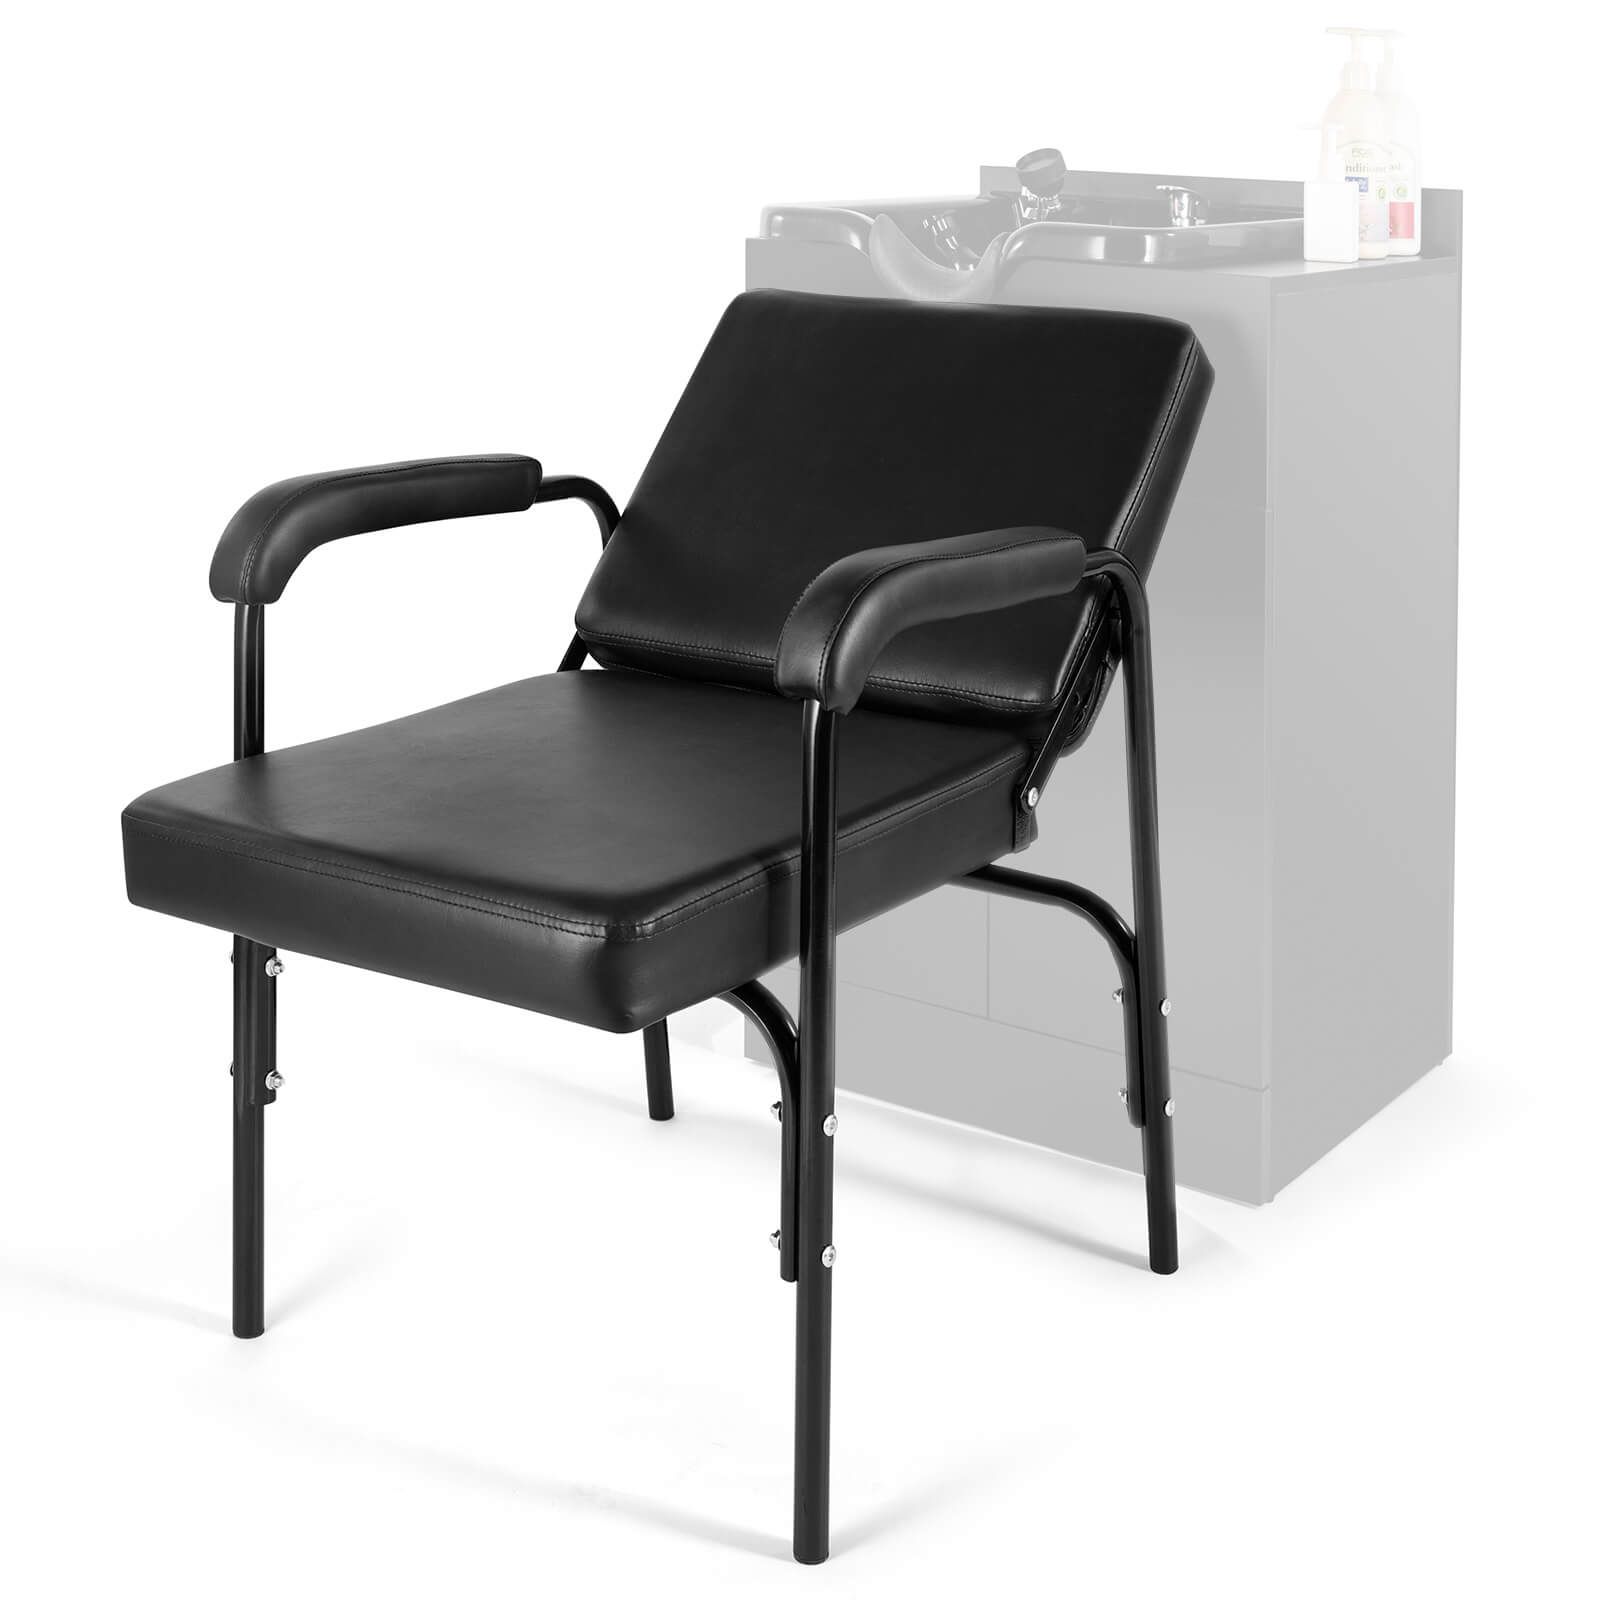 Silla de salón reclinable, silla de peluquería, silla de spa